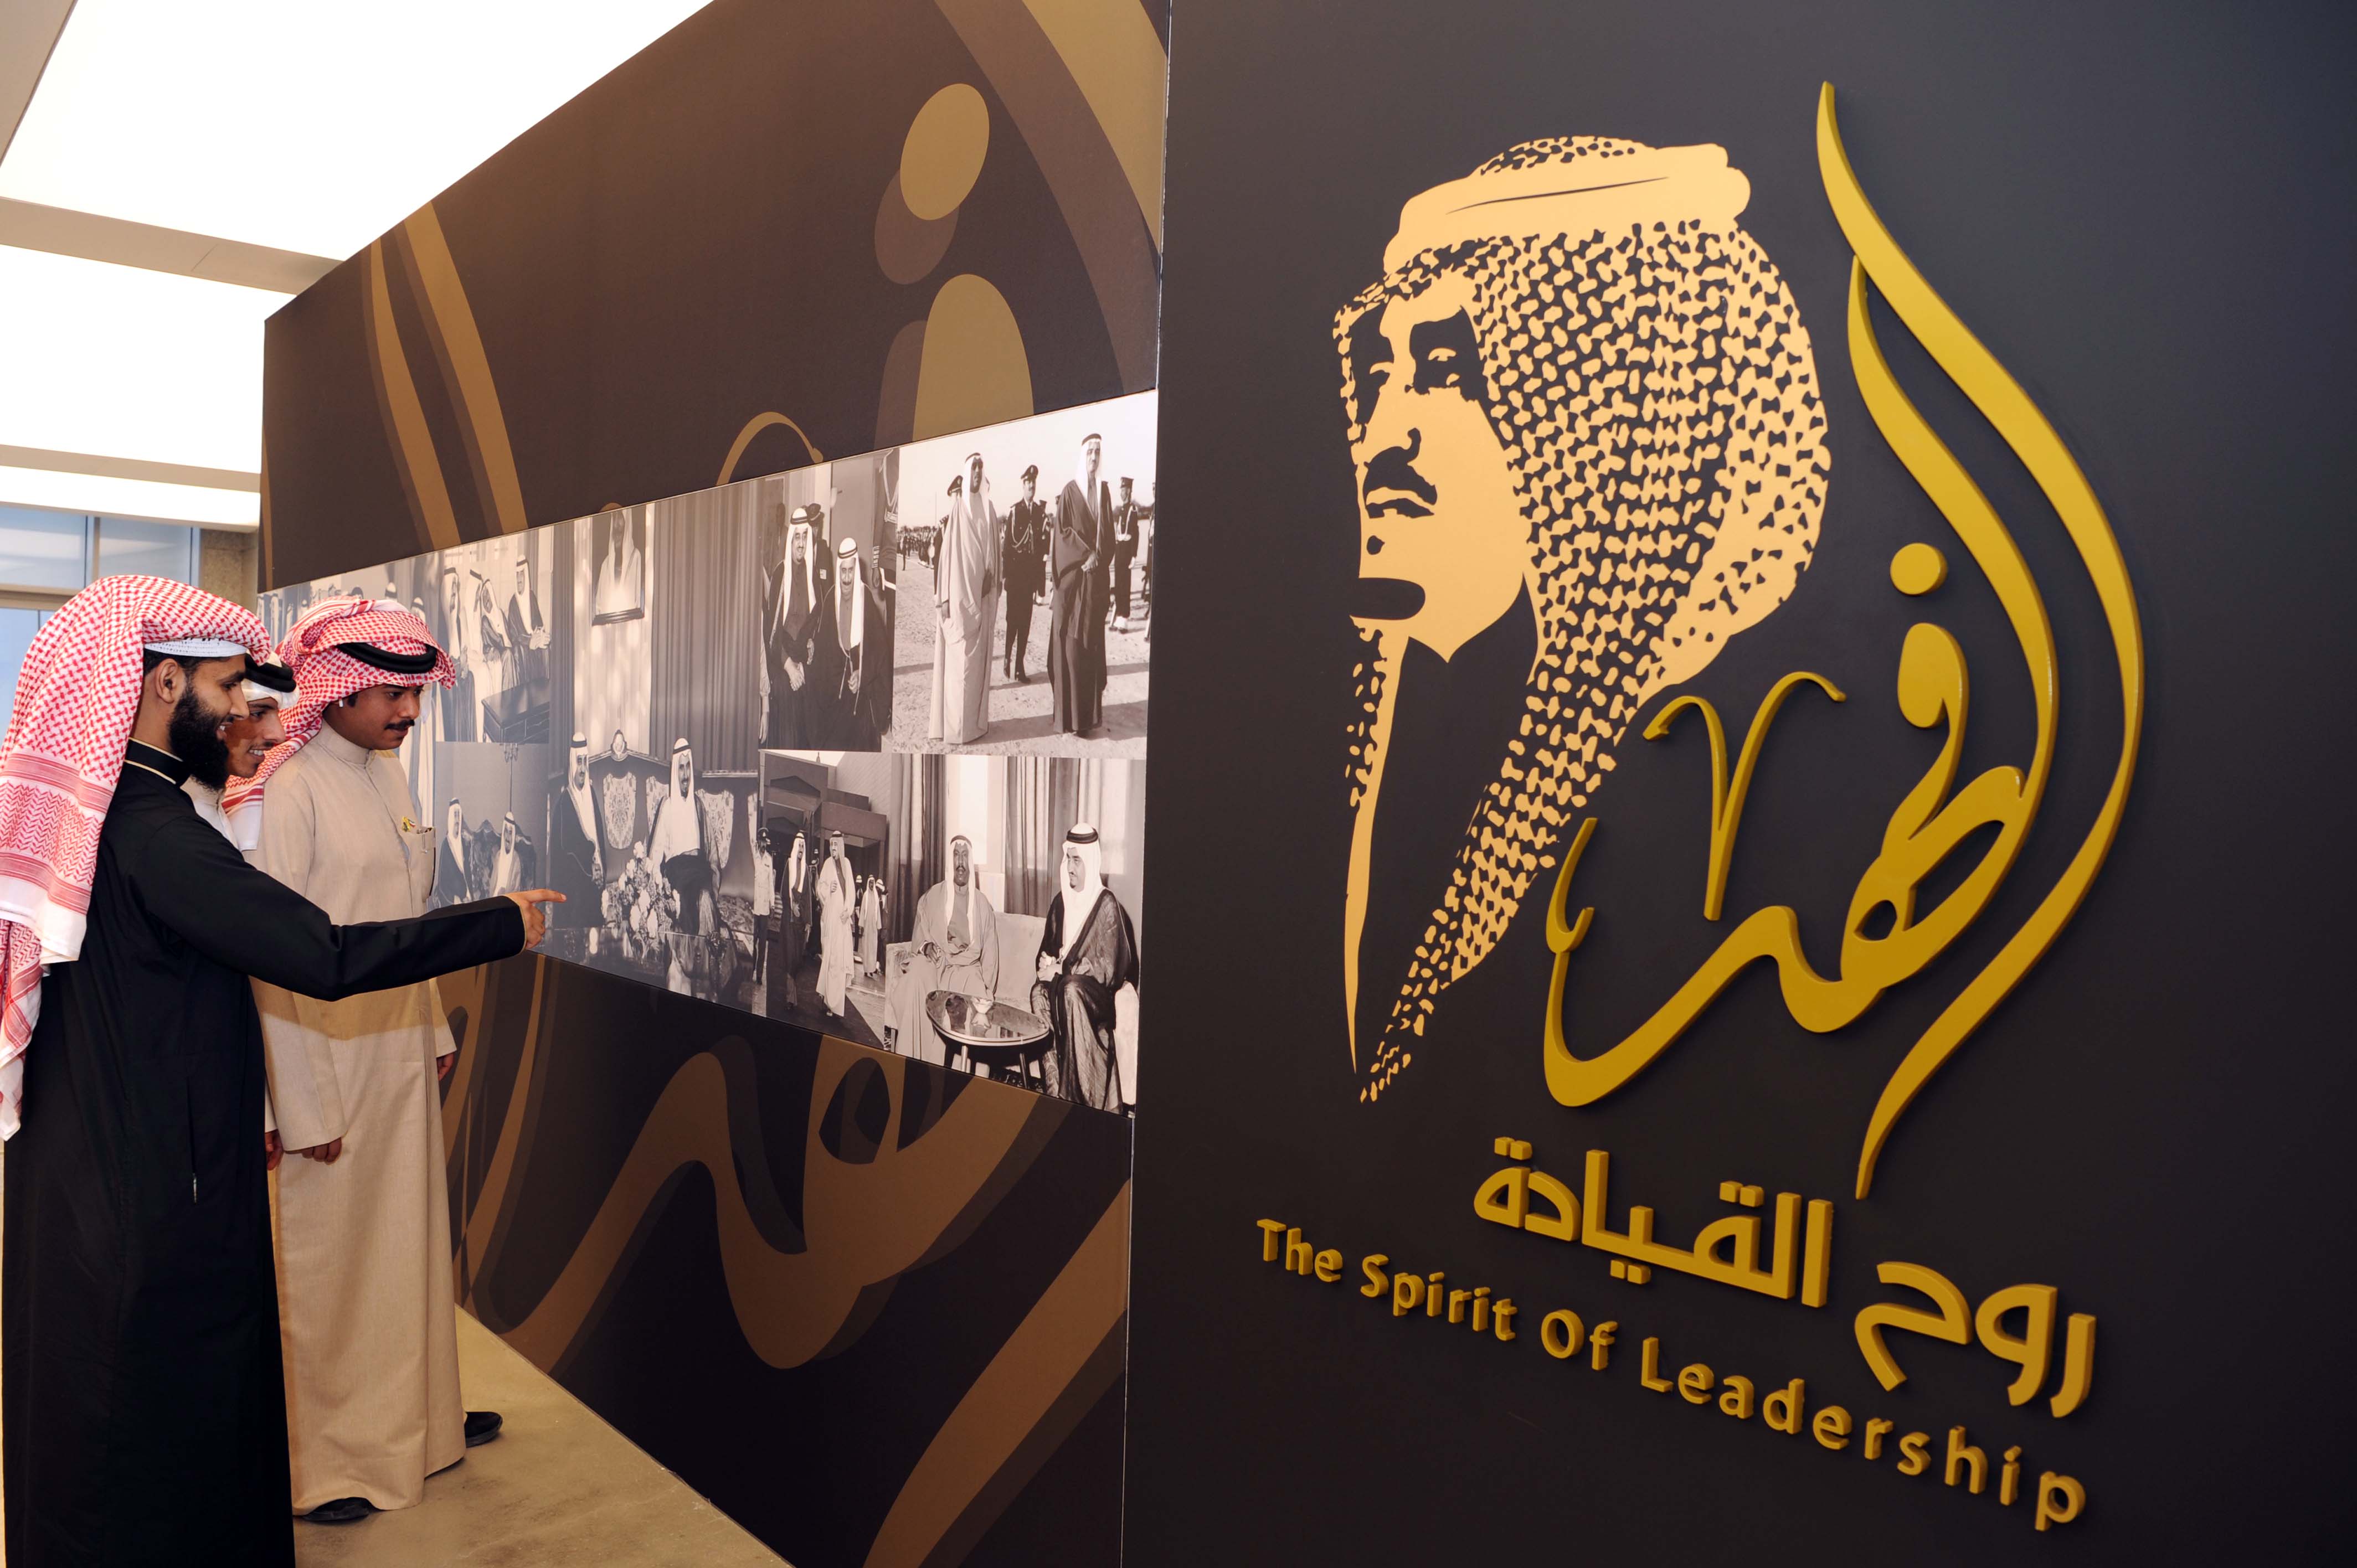 معرض (الفهد.. روح القيادة) الذي انطلق اليوم في الكويت بمركز الشيخ (جابر الأحمد) الثقافي